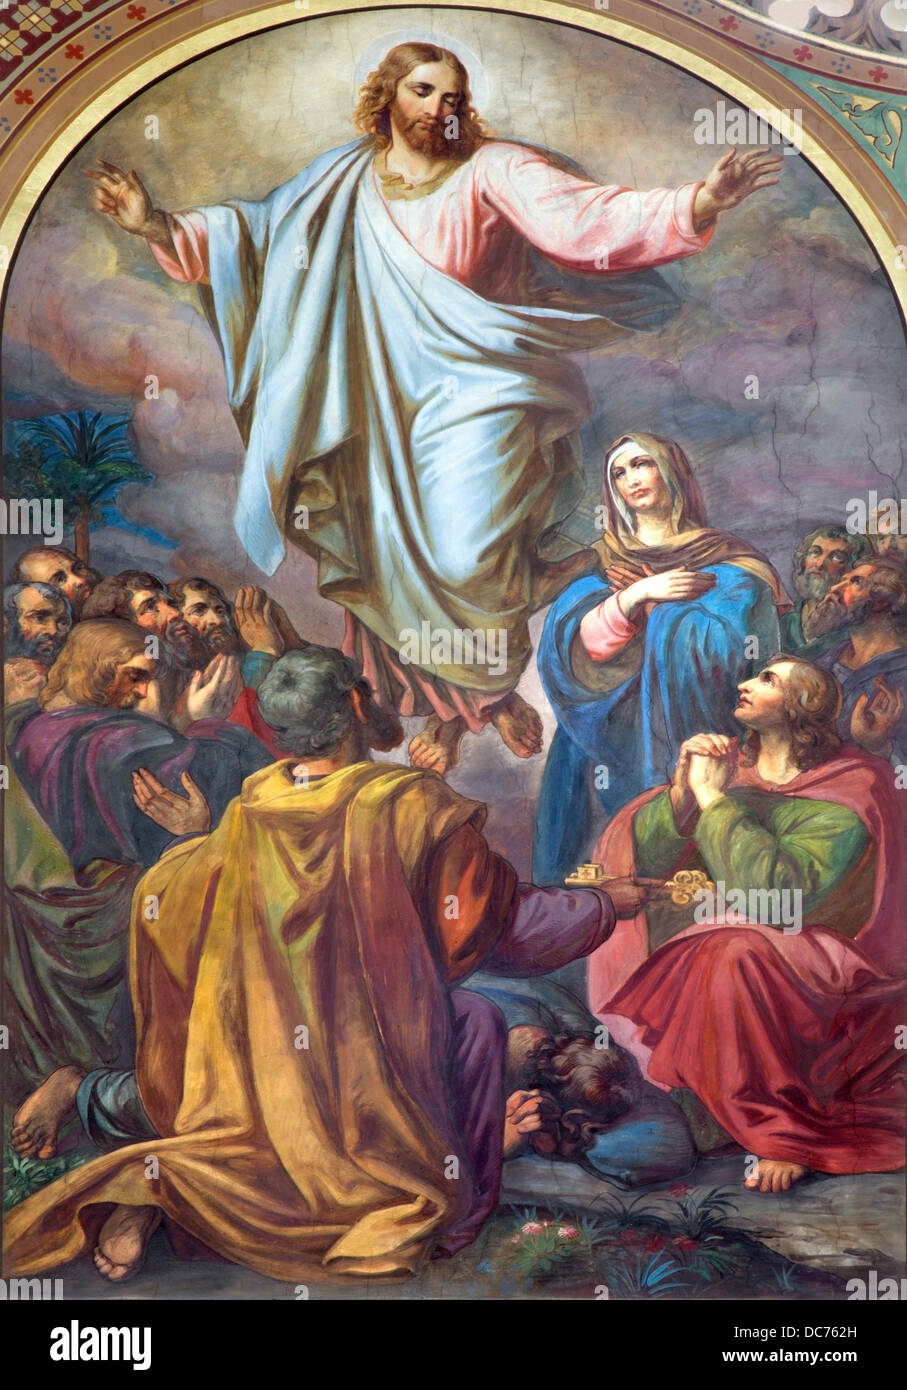 Vienne - 27 juillet : fresque de l'Ascension du Seigneur dans la nef de l'église d'Altlerchenfelder 19. 100. Le 27 juillet 2013, Vienne. Banque D'Images